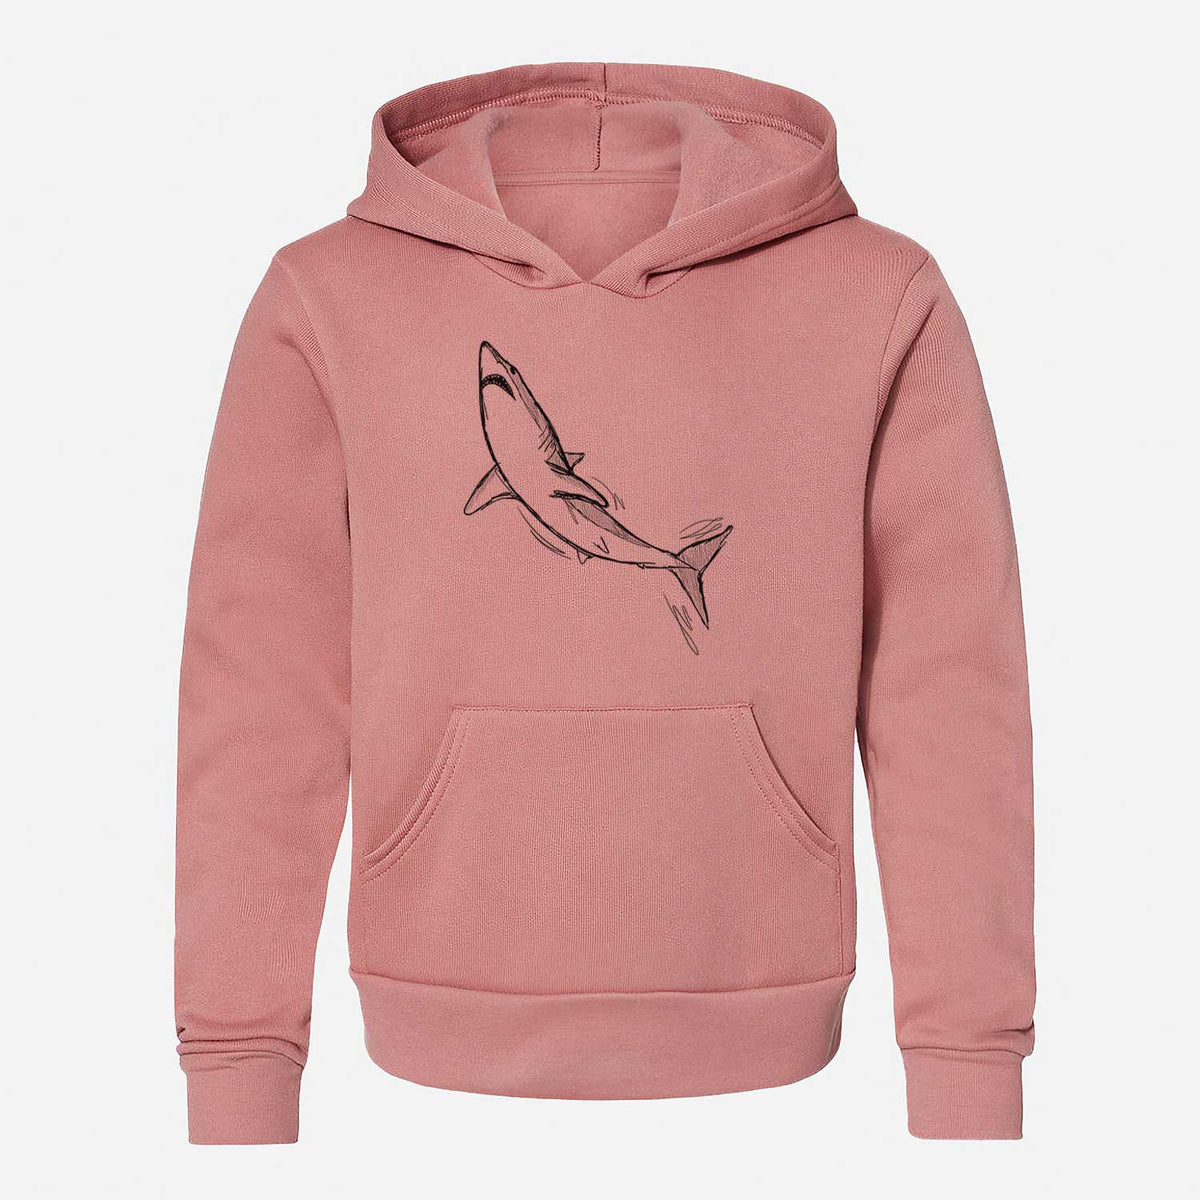 Shortfin Mako Shark - Youth Hoodie Sweatshirt